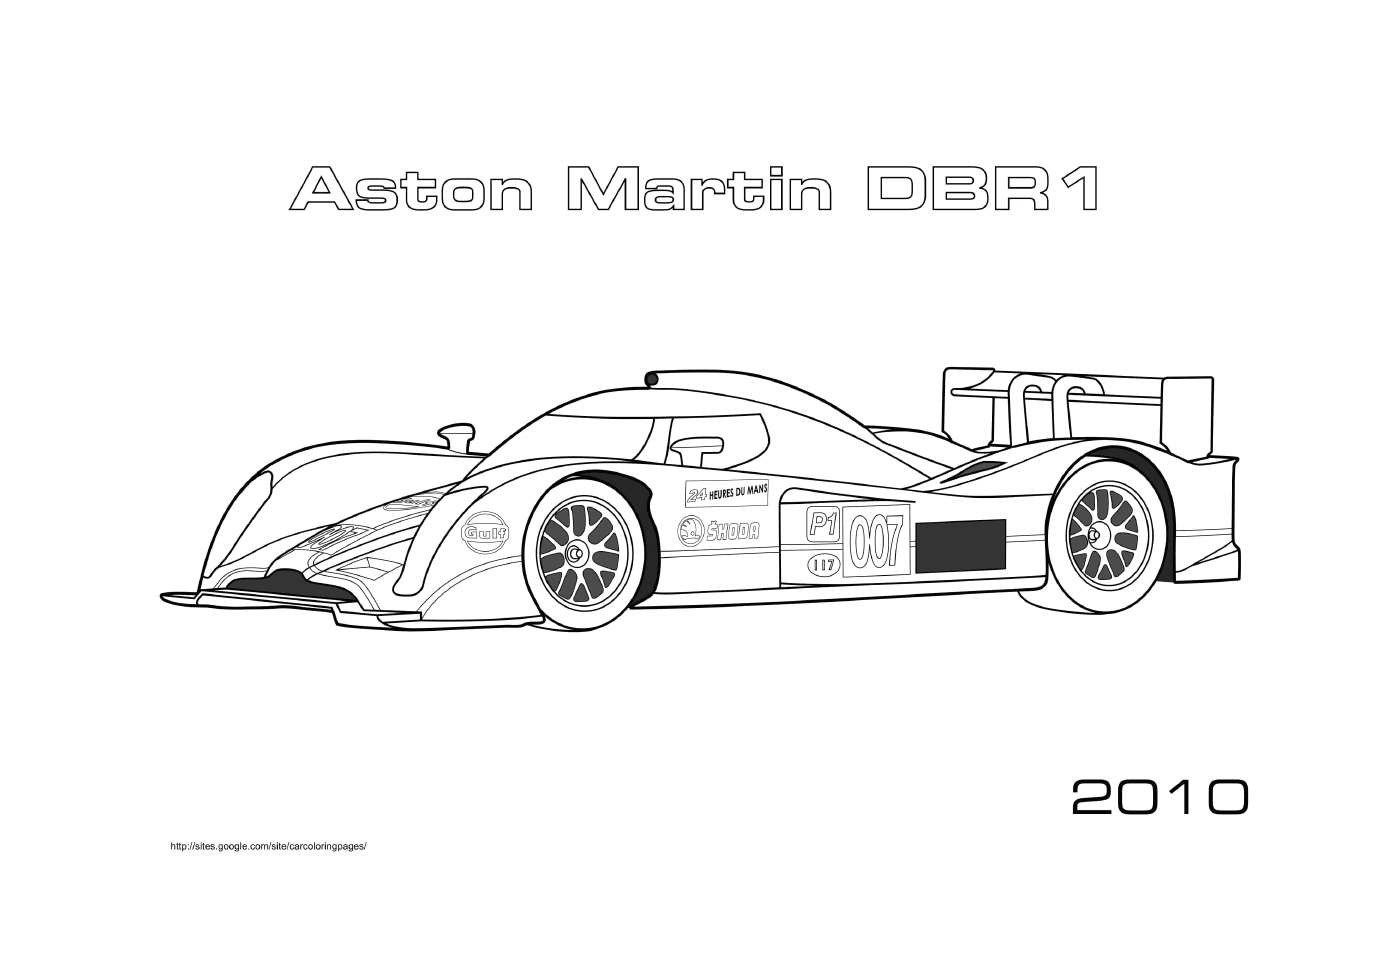  Aston Martin coche de carreras DBR1 2010 